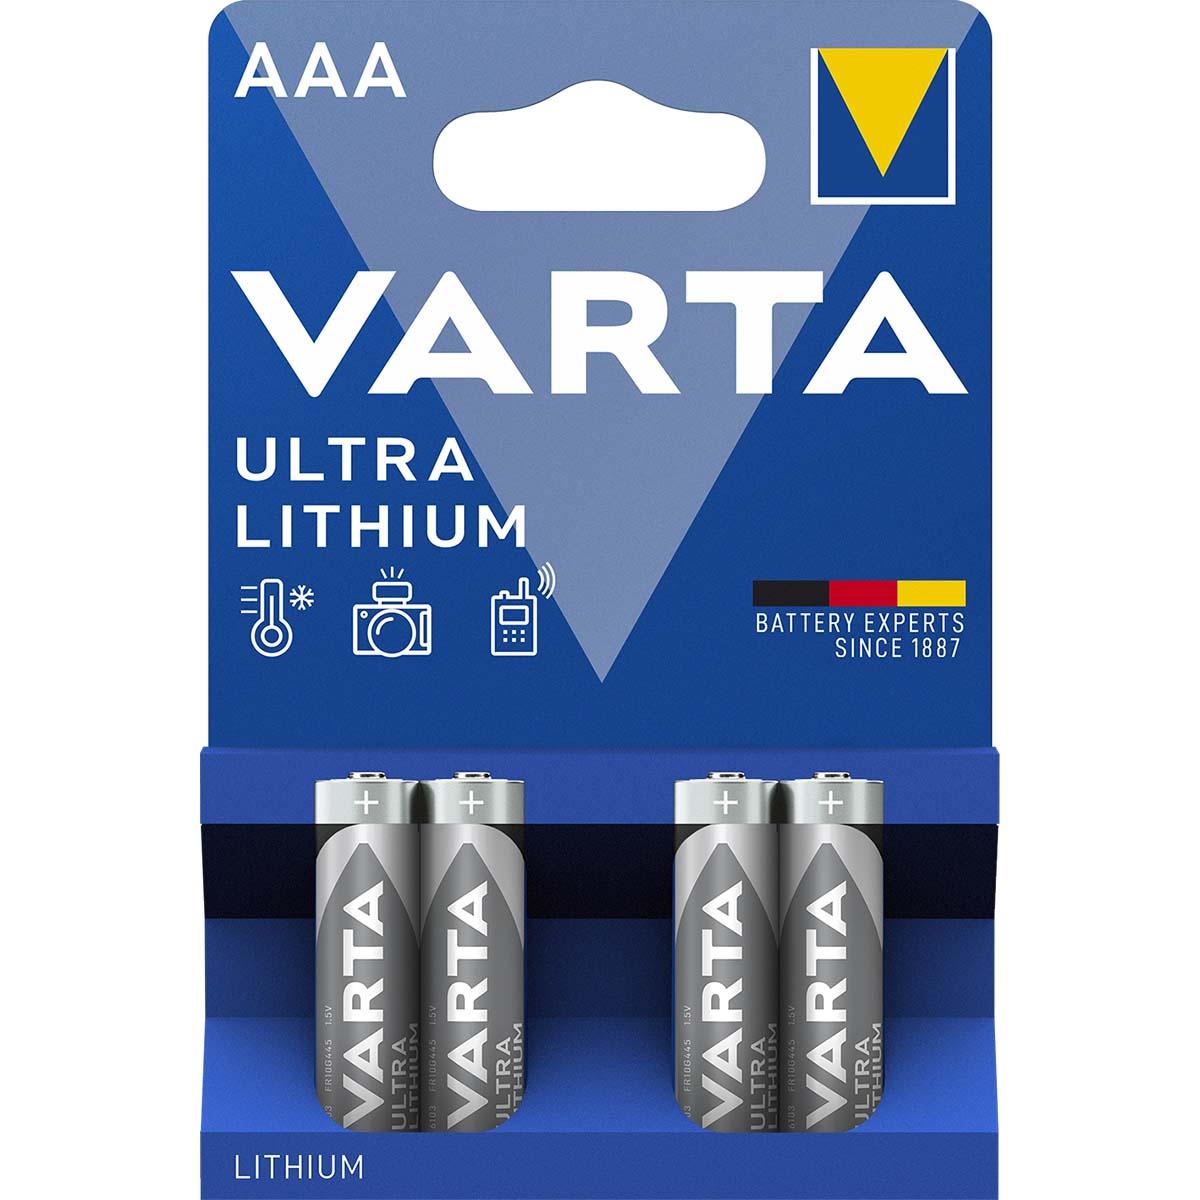 Piles VARTA LR14 C LR20 D AAA AA V23GA 1.5 V 9V D C Alcaline Battery  batería